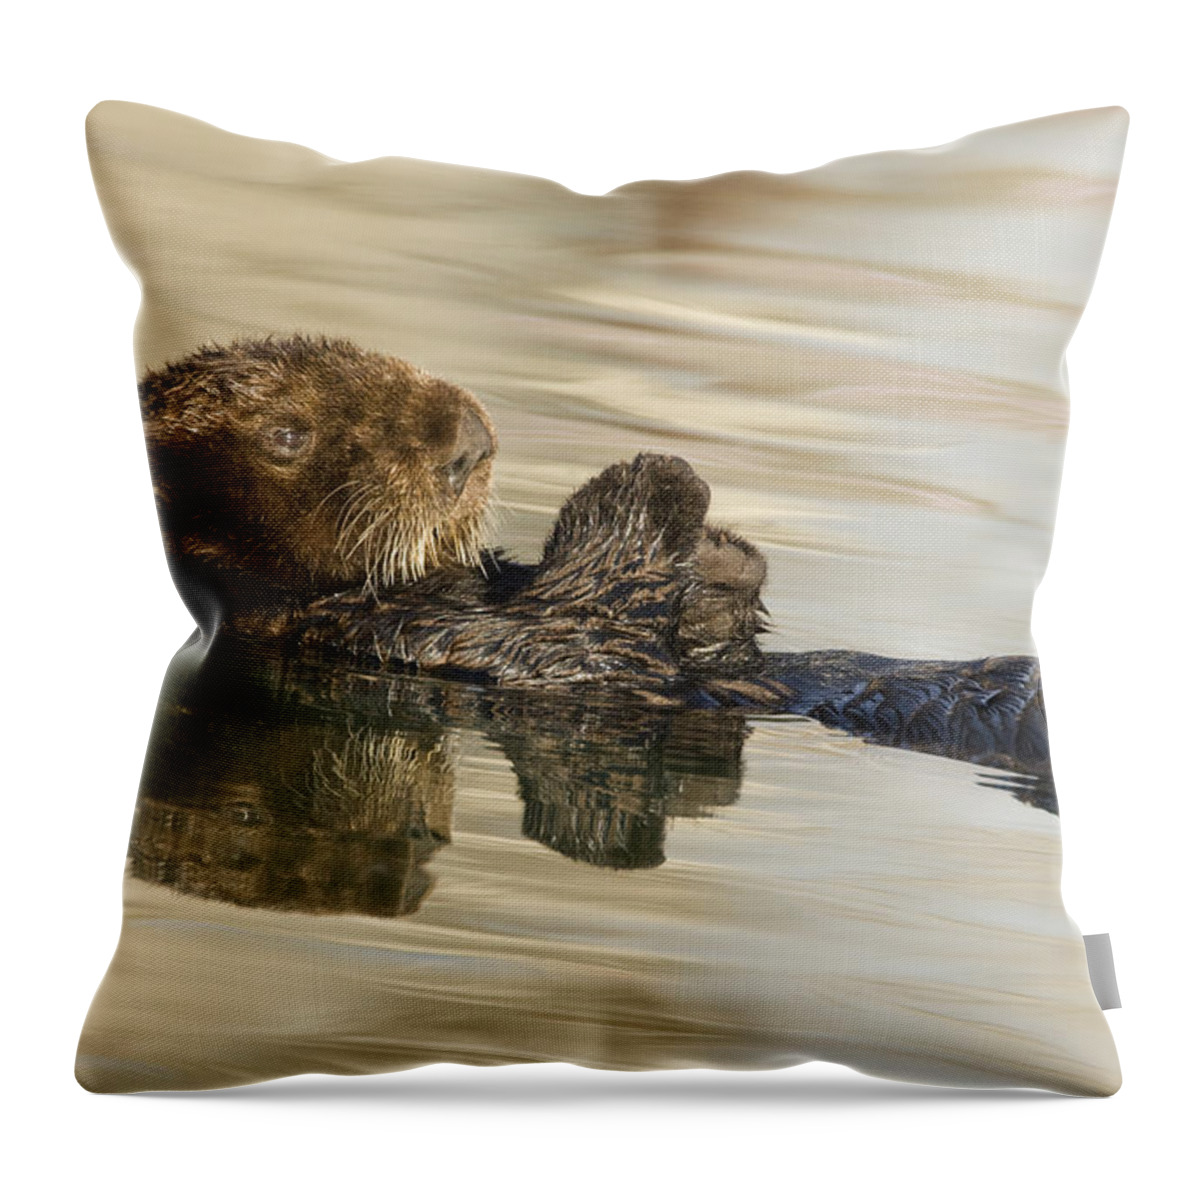 00429660 Throw Pillow featuring the photograph Sea Otter Elkhorn Slough Monterey Bay #4 by Sebastian Kennerknecht